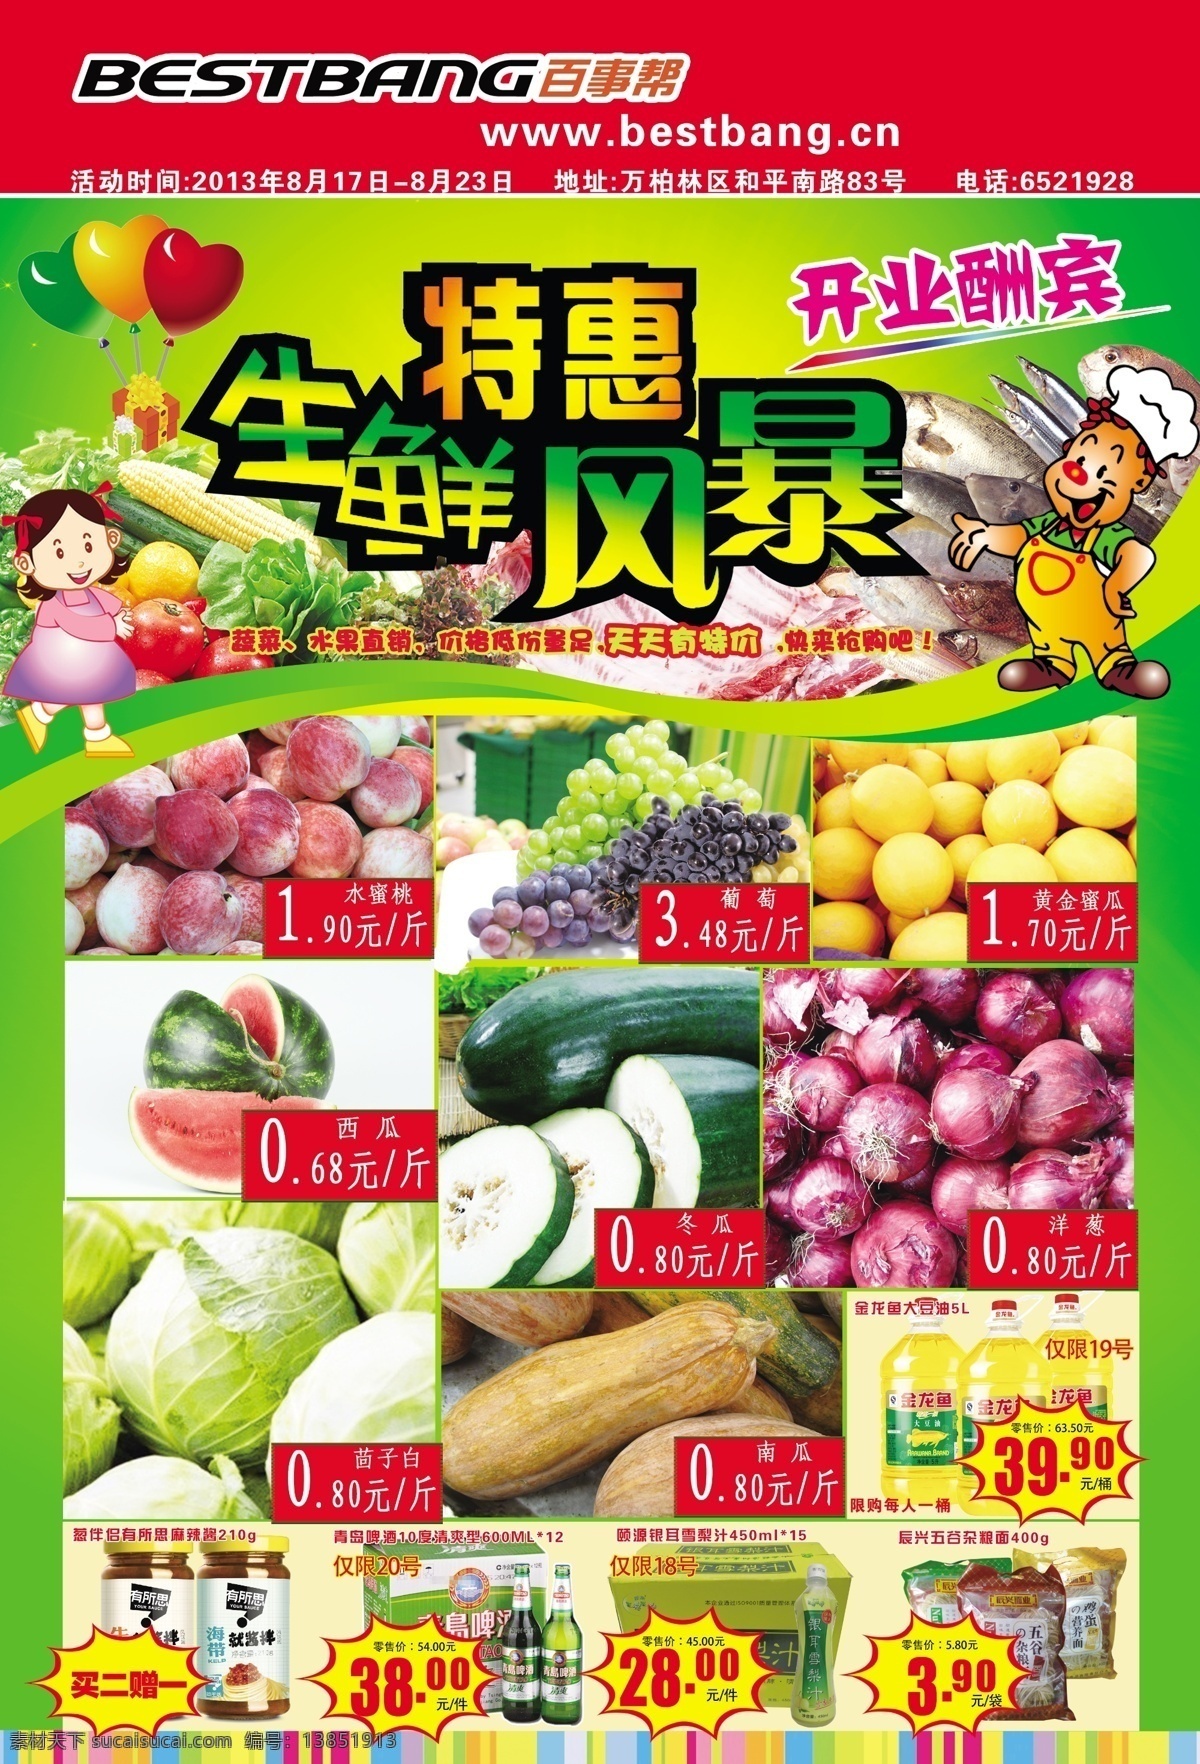 超市生鲜海报 模版下载 生鲜 特惠 水果 蔬菜 惊爆 开业 广告设计模板 源文件